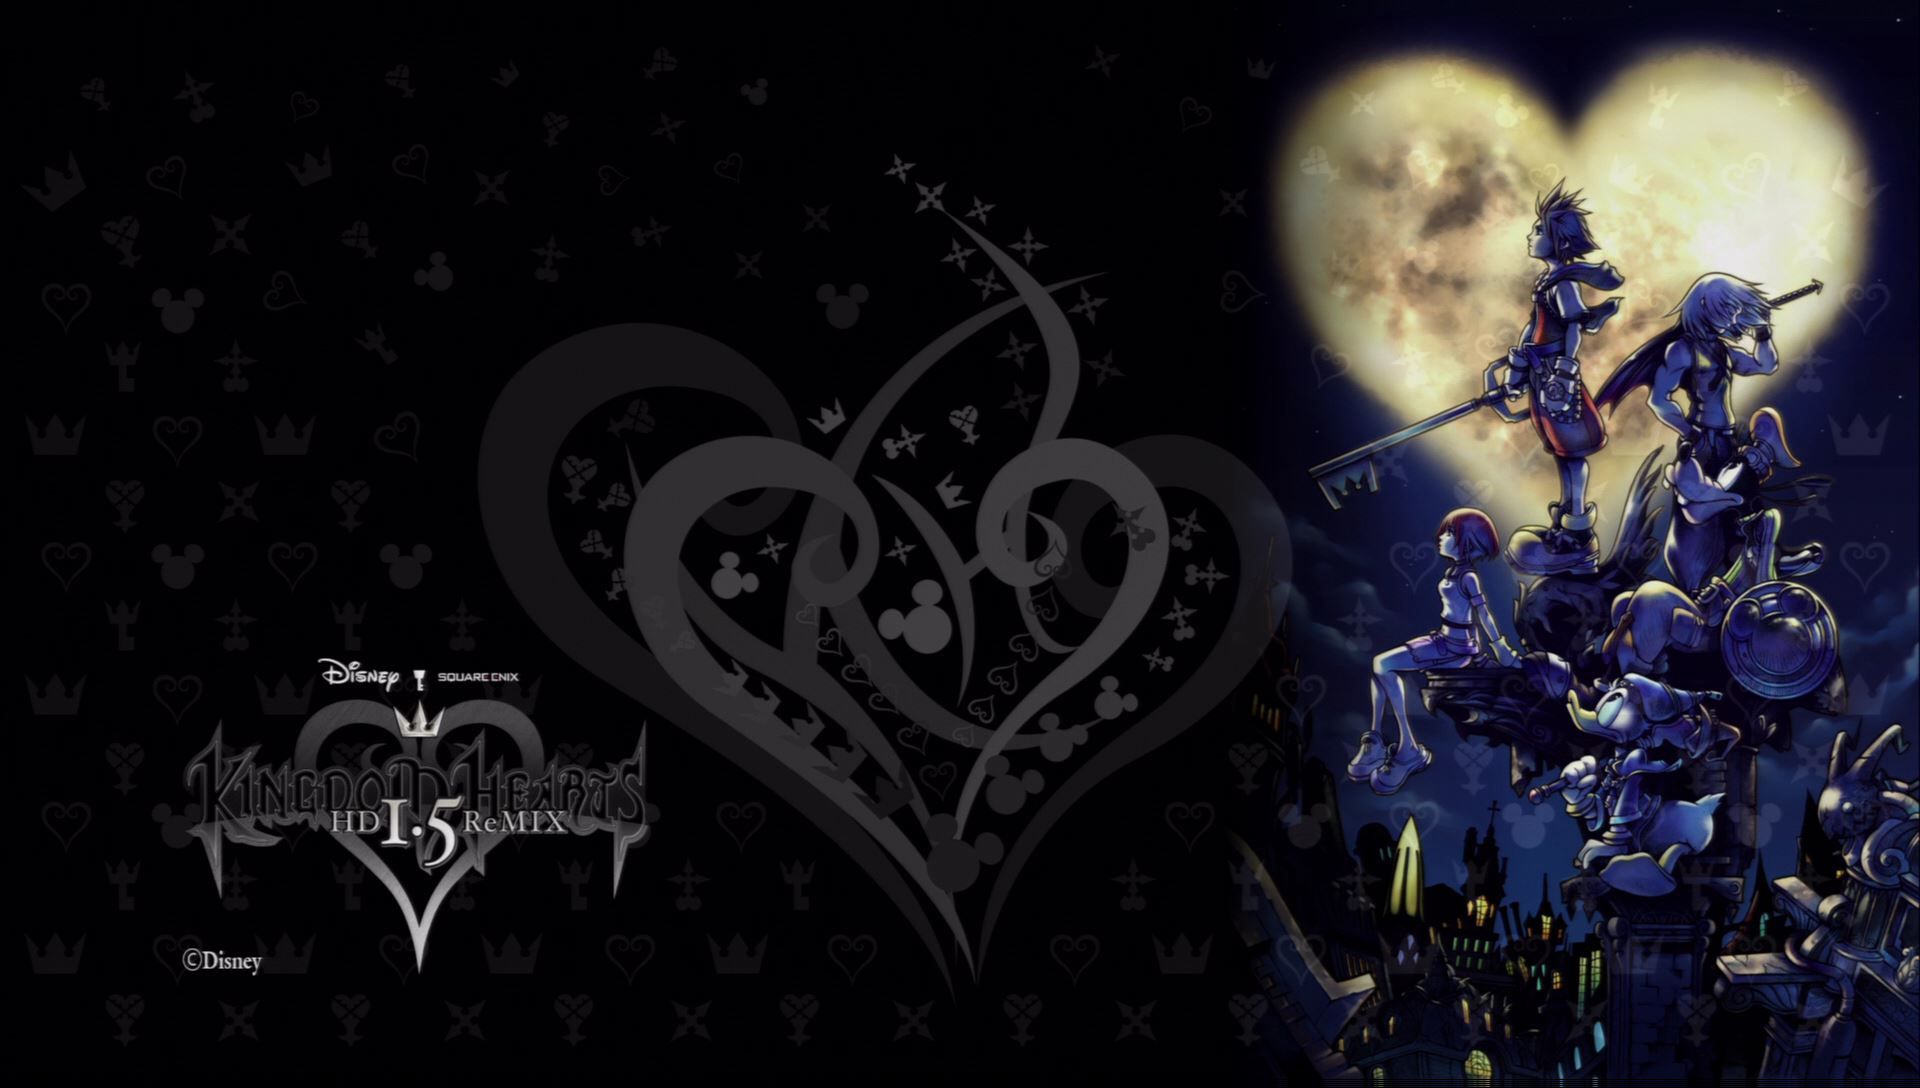 Kingdom Hearts Final Mix Wallpaper. Magic Kingdom Wallpaper, Kingdom Hearts Wallpaper and Animal Kingdom Lodge Wallpaper